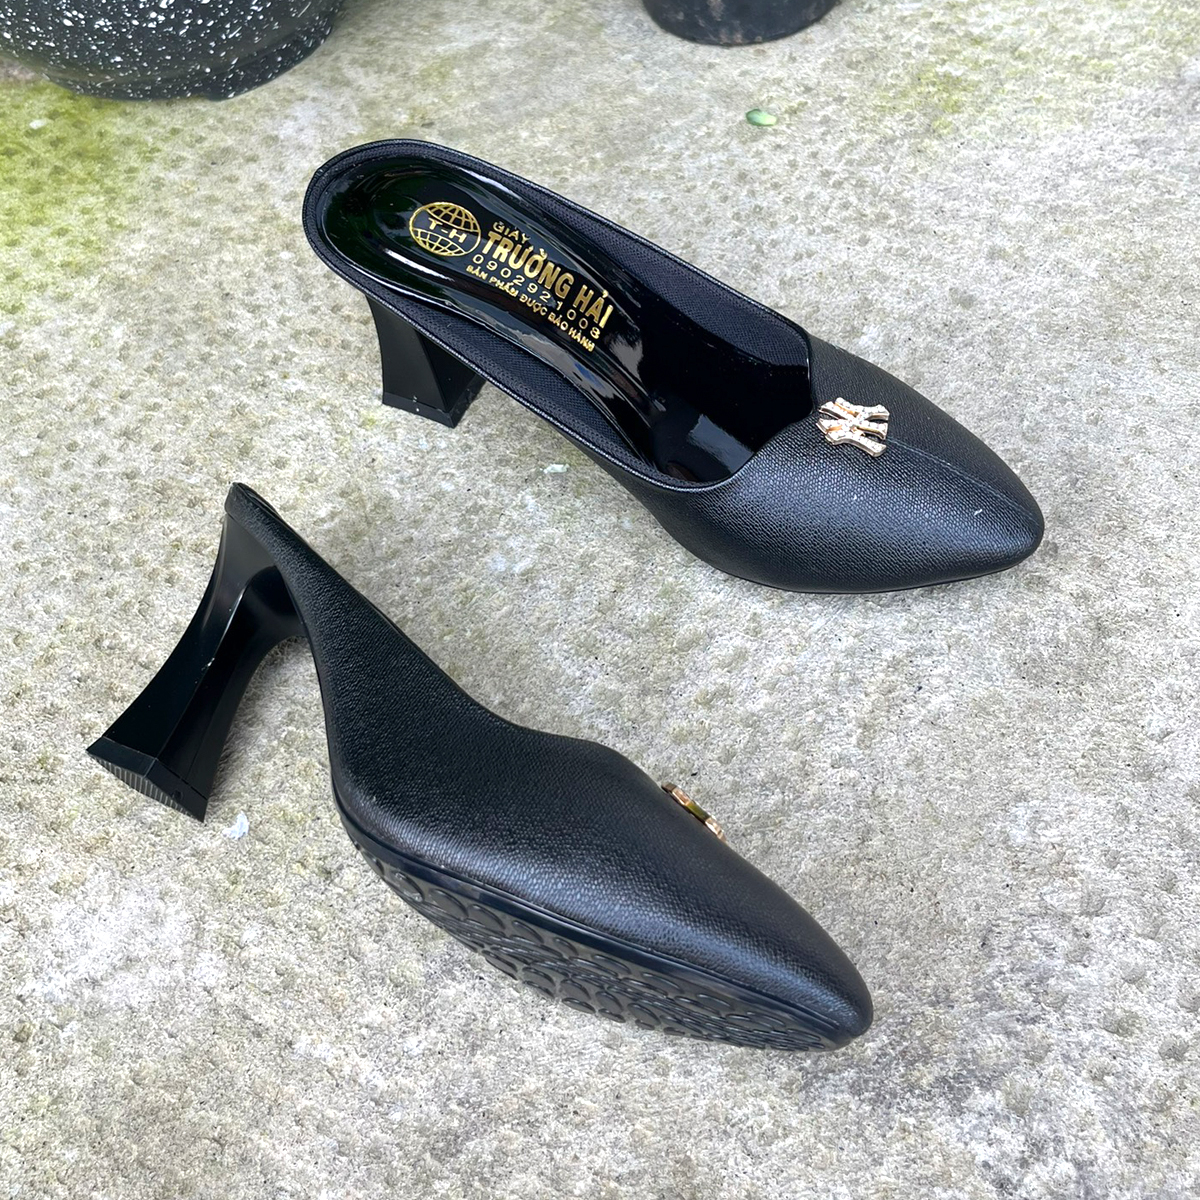 Giày Sục nữ cao gót 7cm  Trường Hải da mềm mại 2 màu đen, nâu  S116